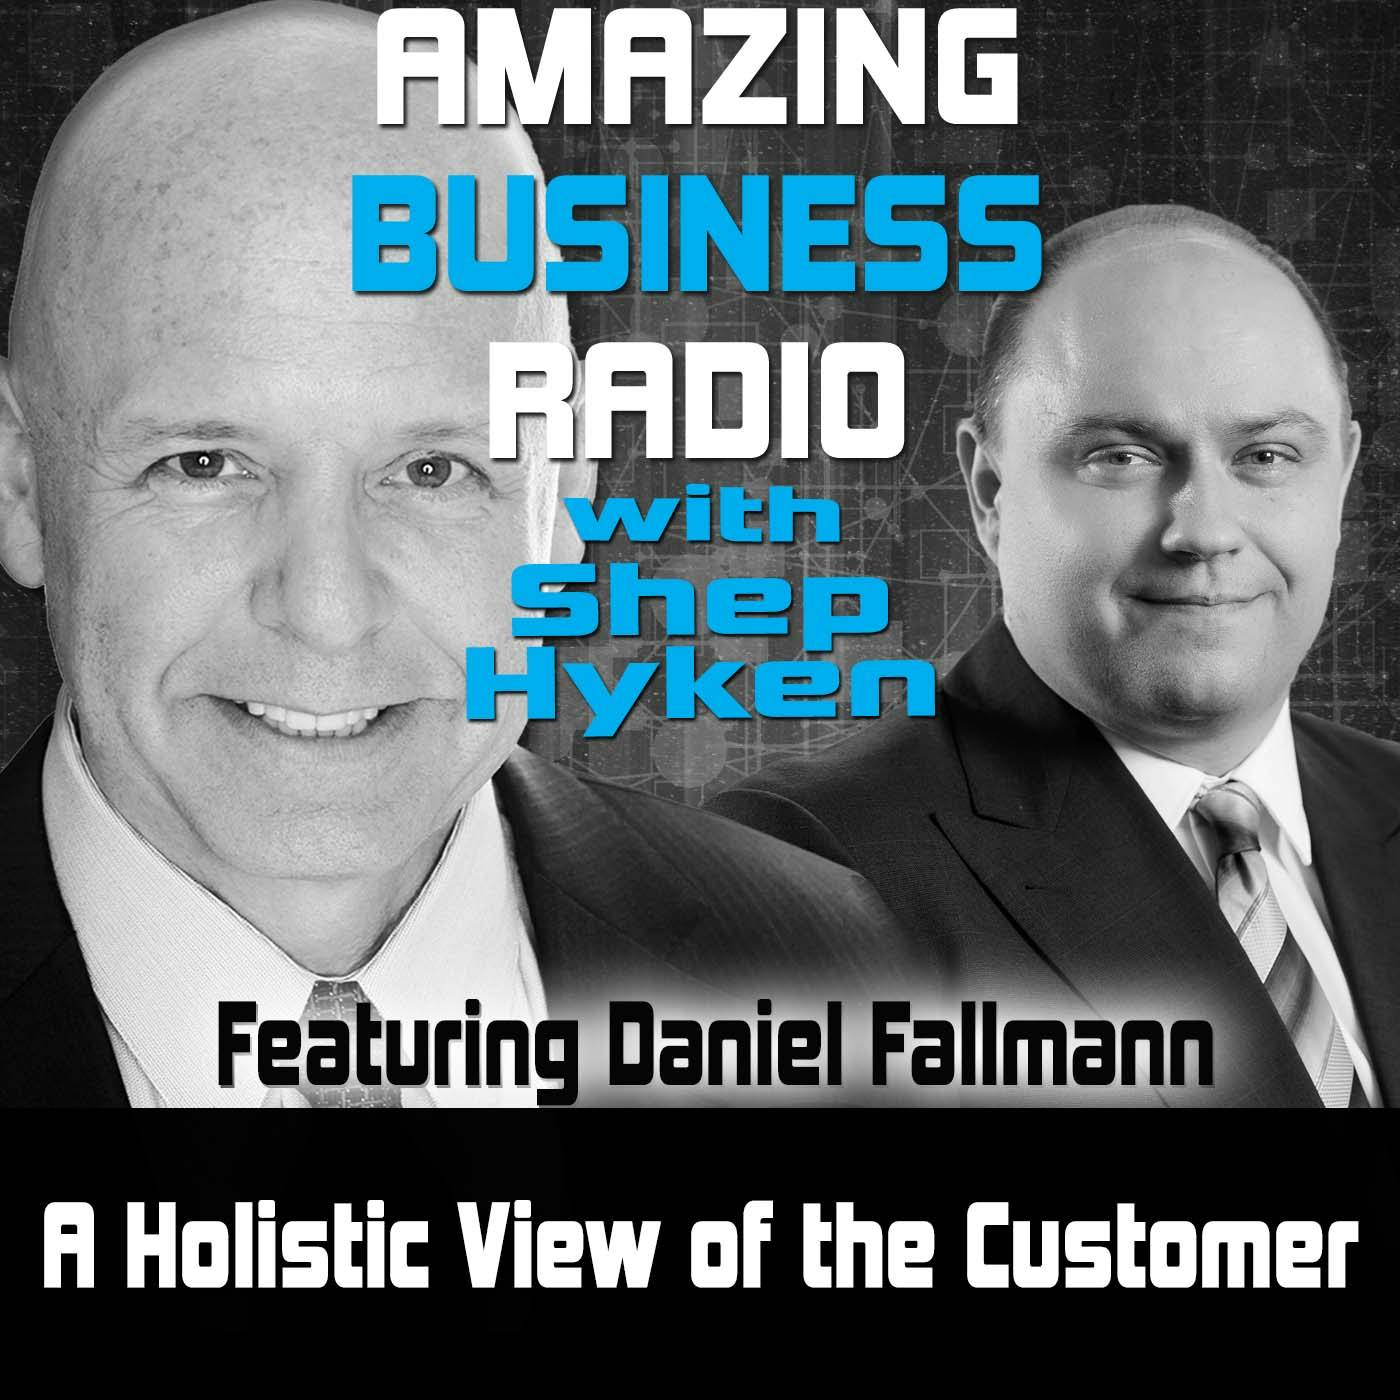 A Holistic View of the Customer Featuring Daniel Fallmann